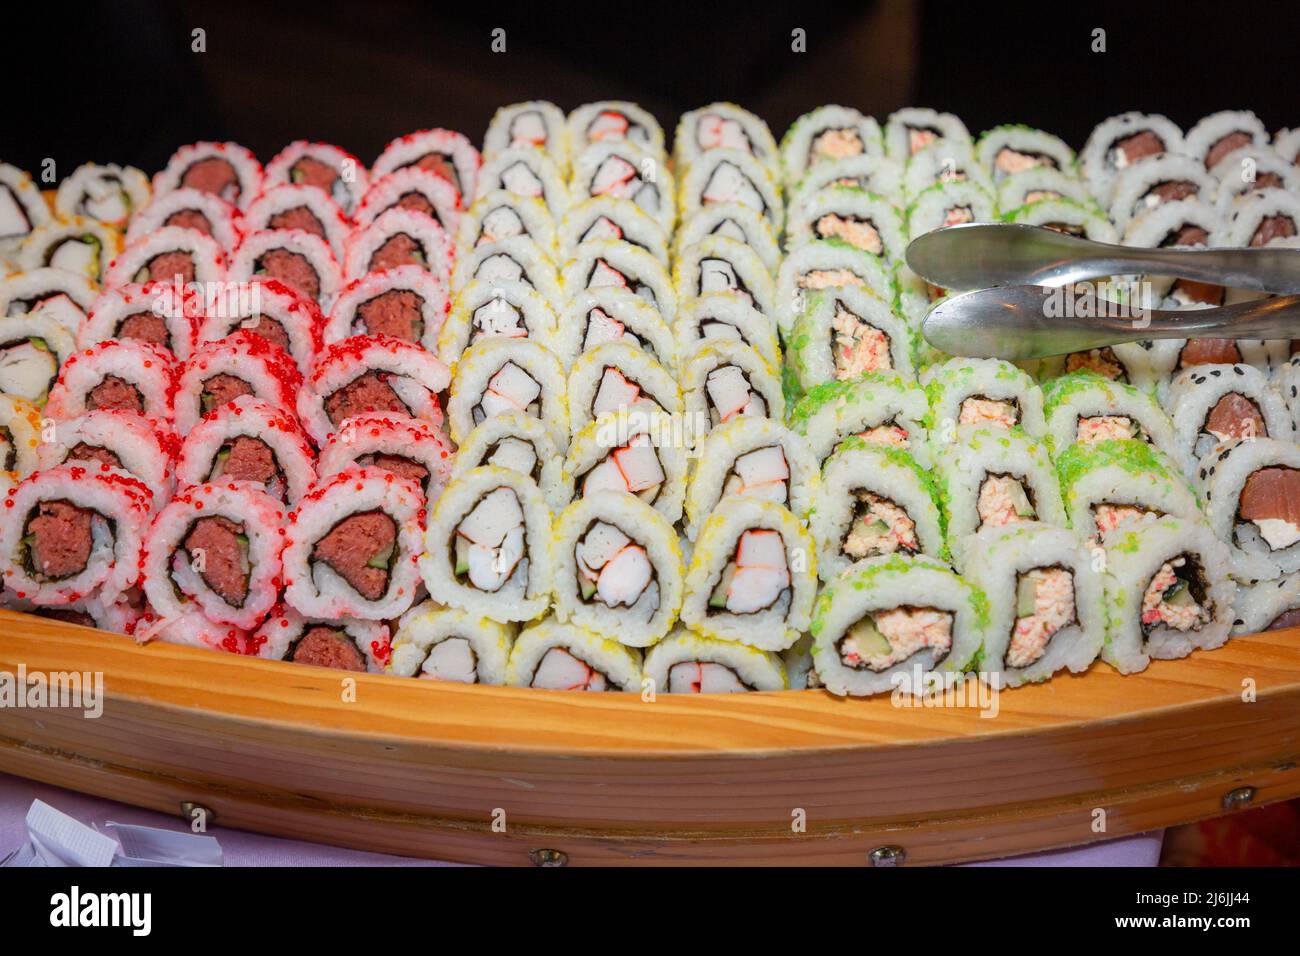 Frisch zubereitete Sushi-Rolls werden am Mittagsbuffet serviert Stockfoto